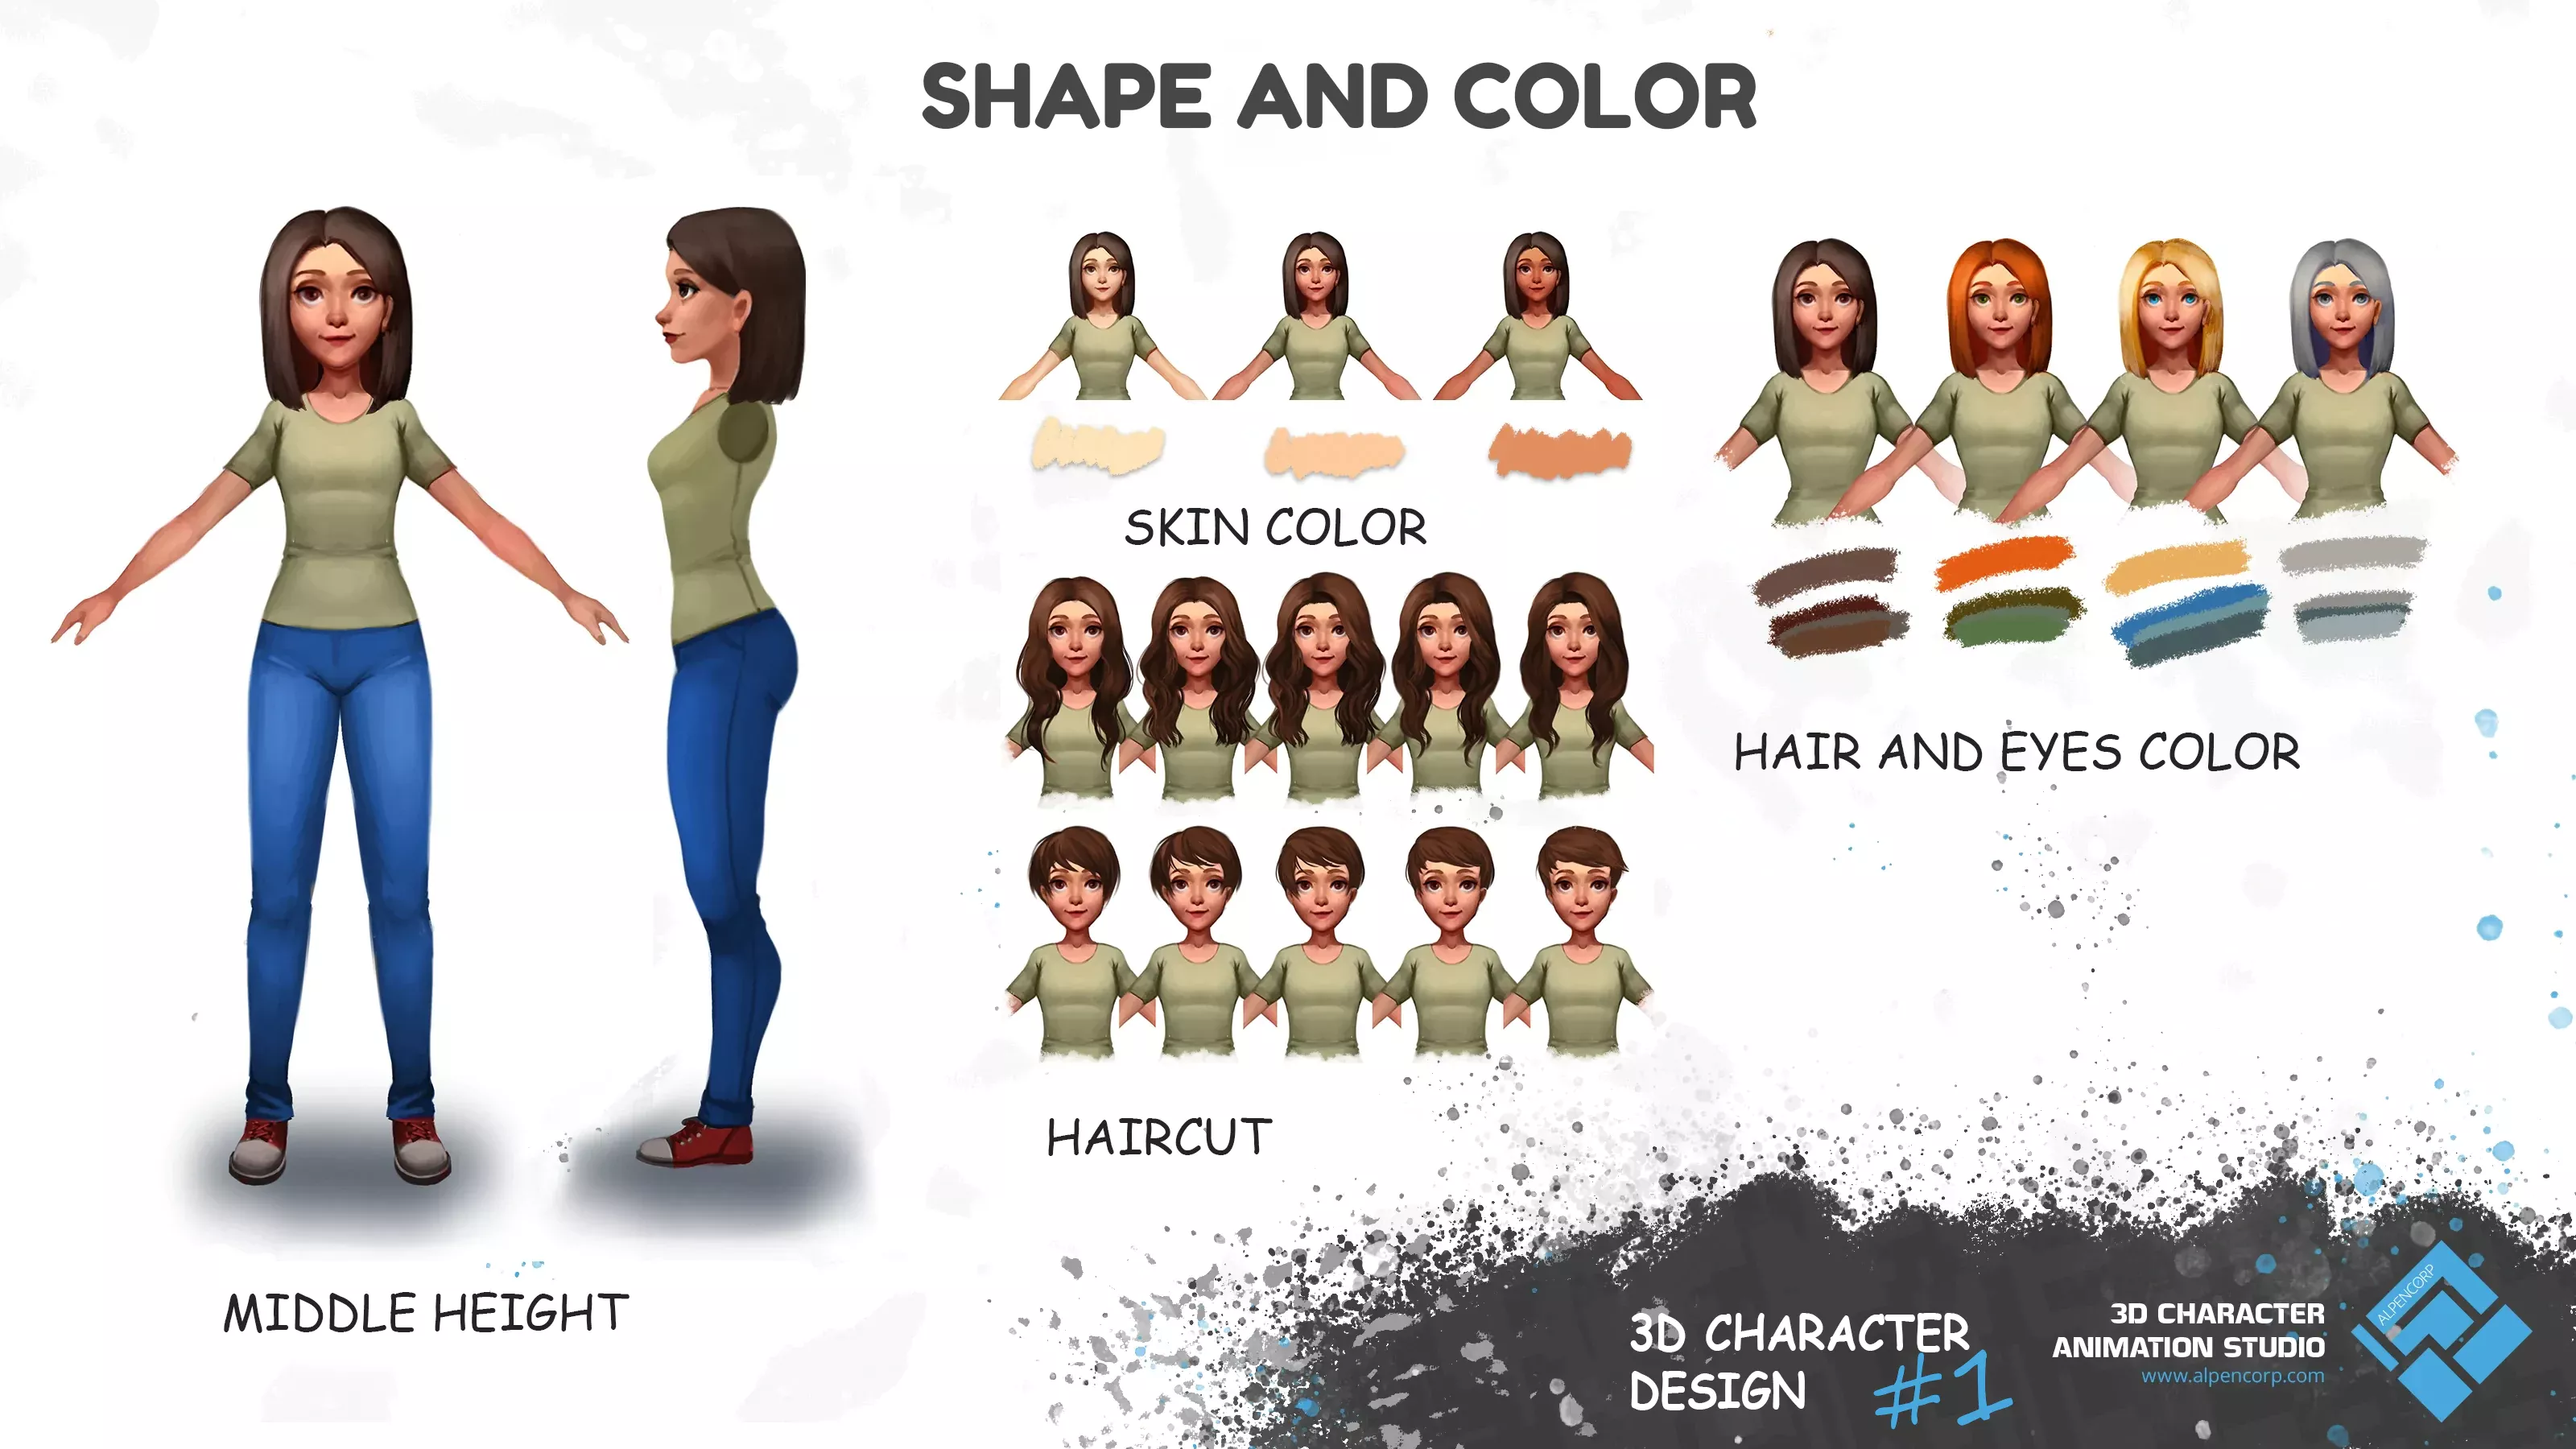 Le concept de personnage 3D pour les vues complètes et de profil de l'eShop, ainsi que les variations de couleurs et les coupes de cheveux.